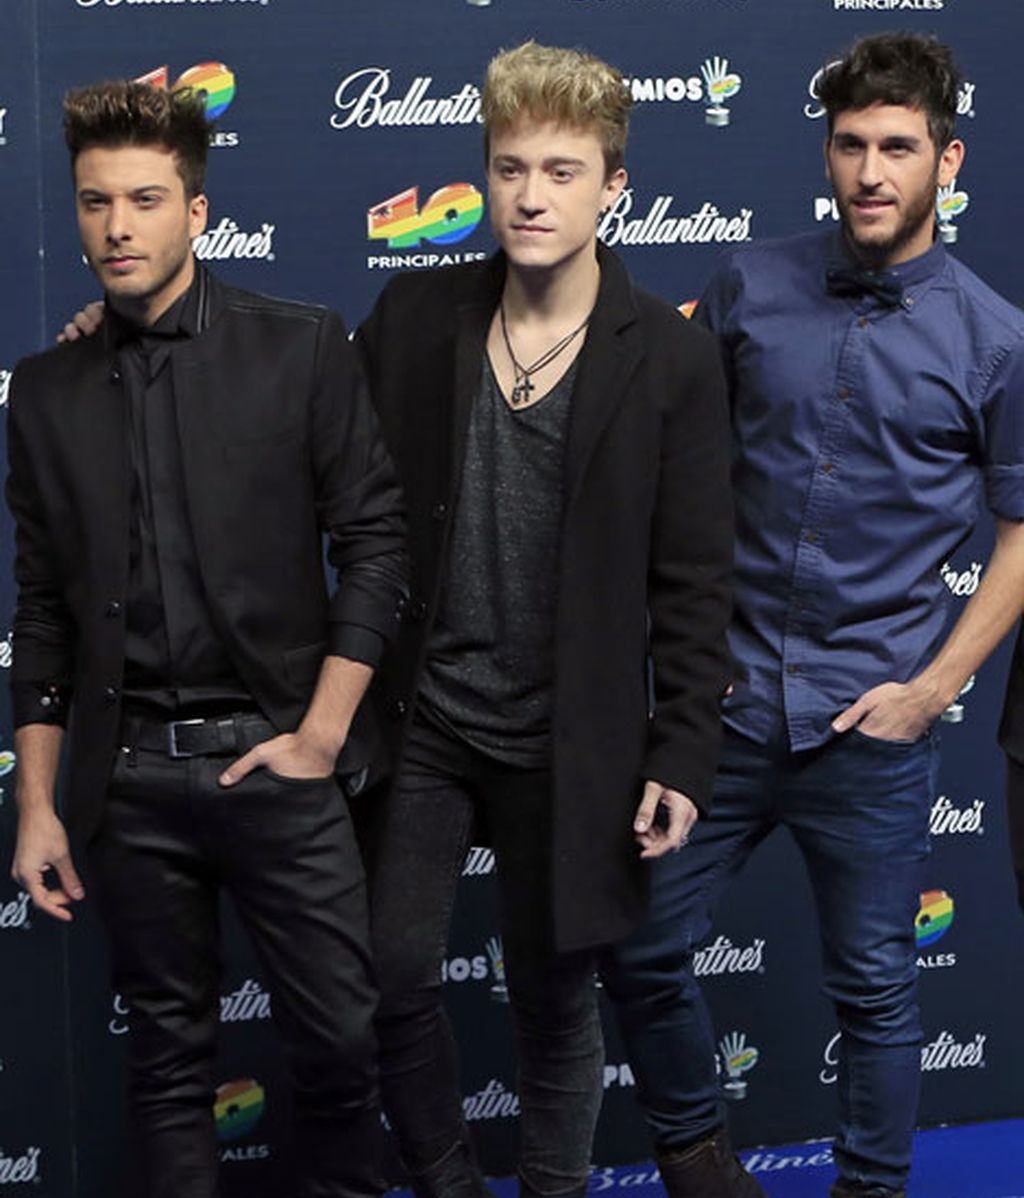 Malú, 'One Direction', Dani Martín... glamour en la alfombra azul de la gala 40 Principales